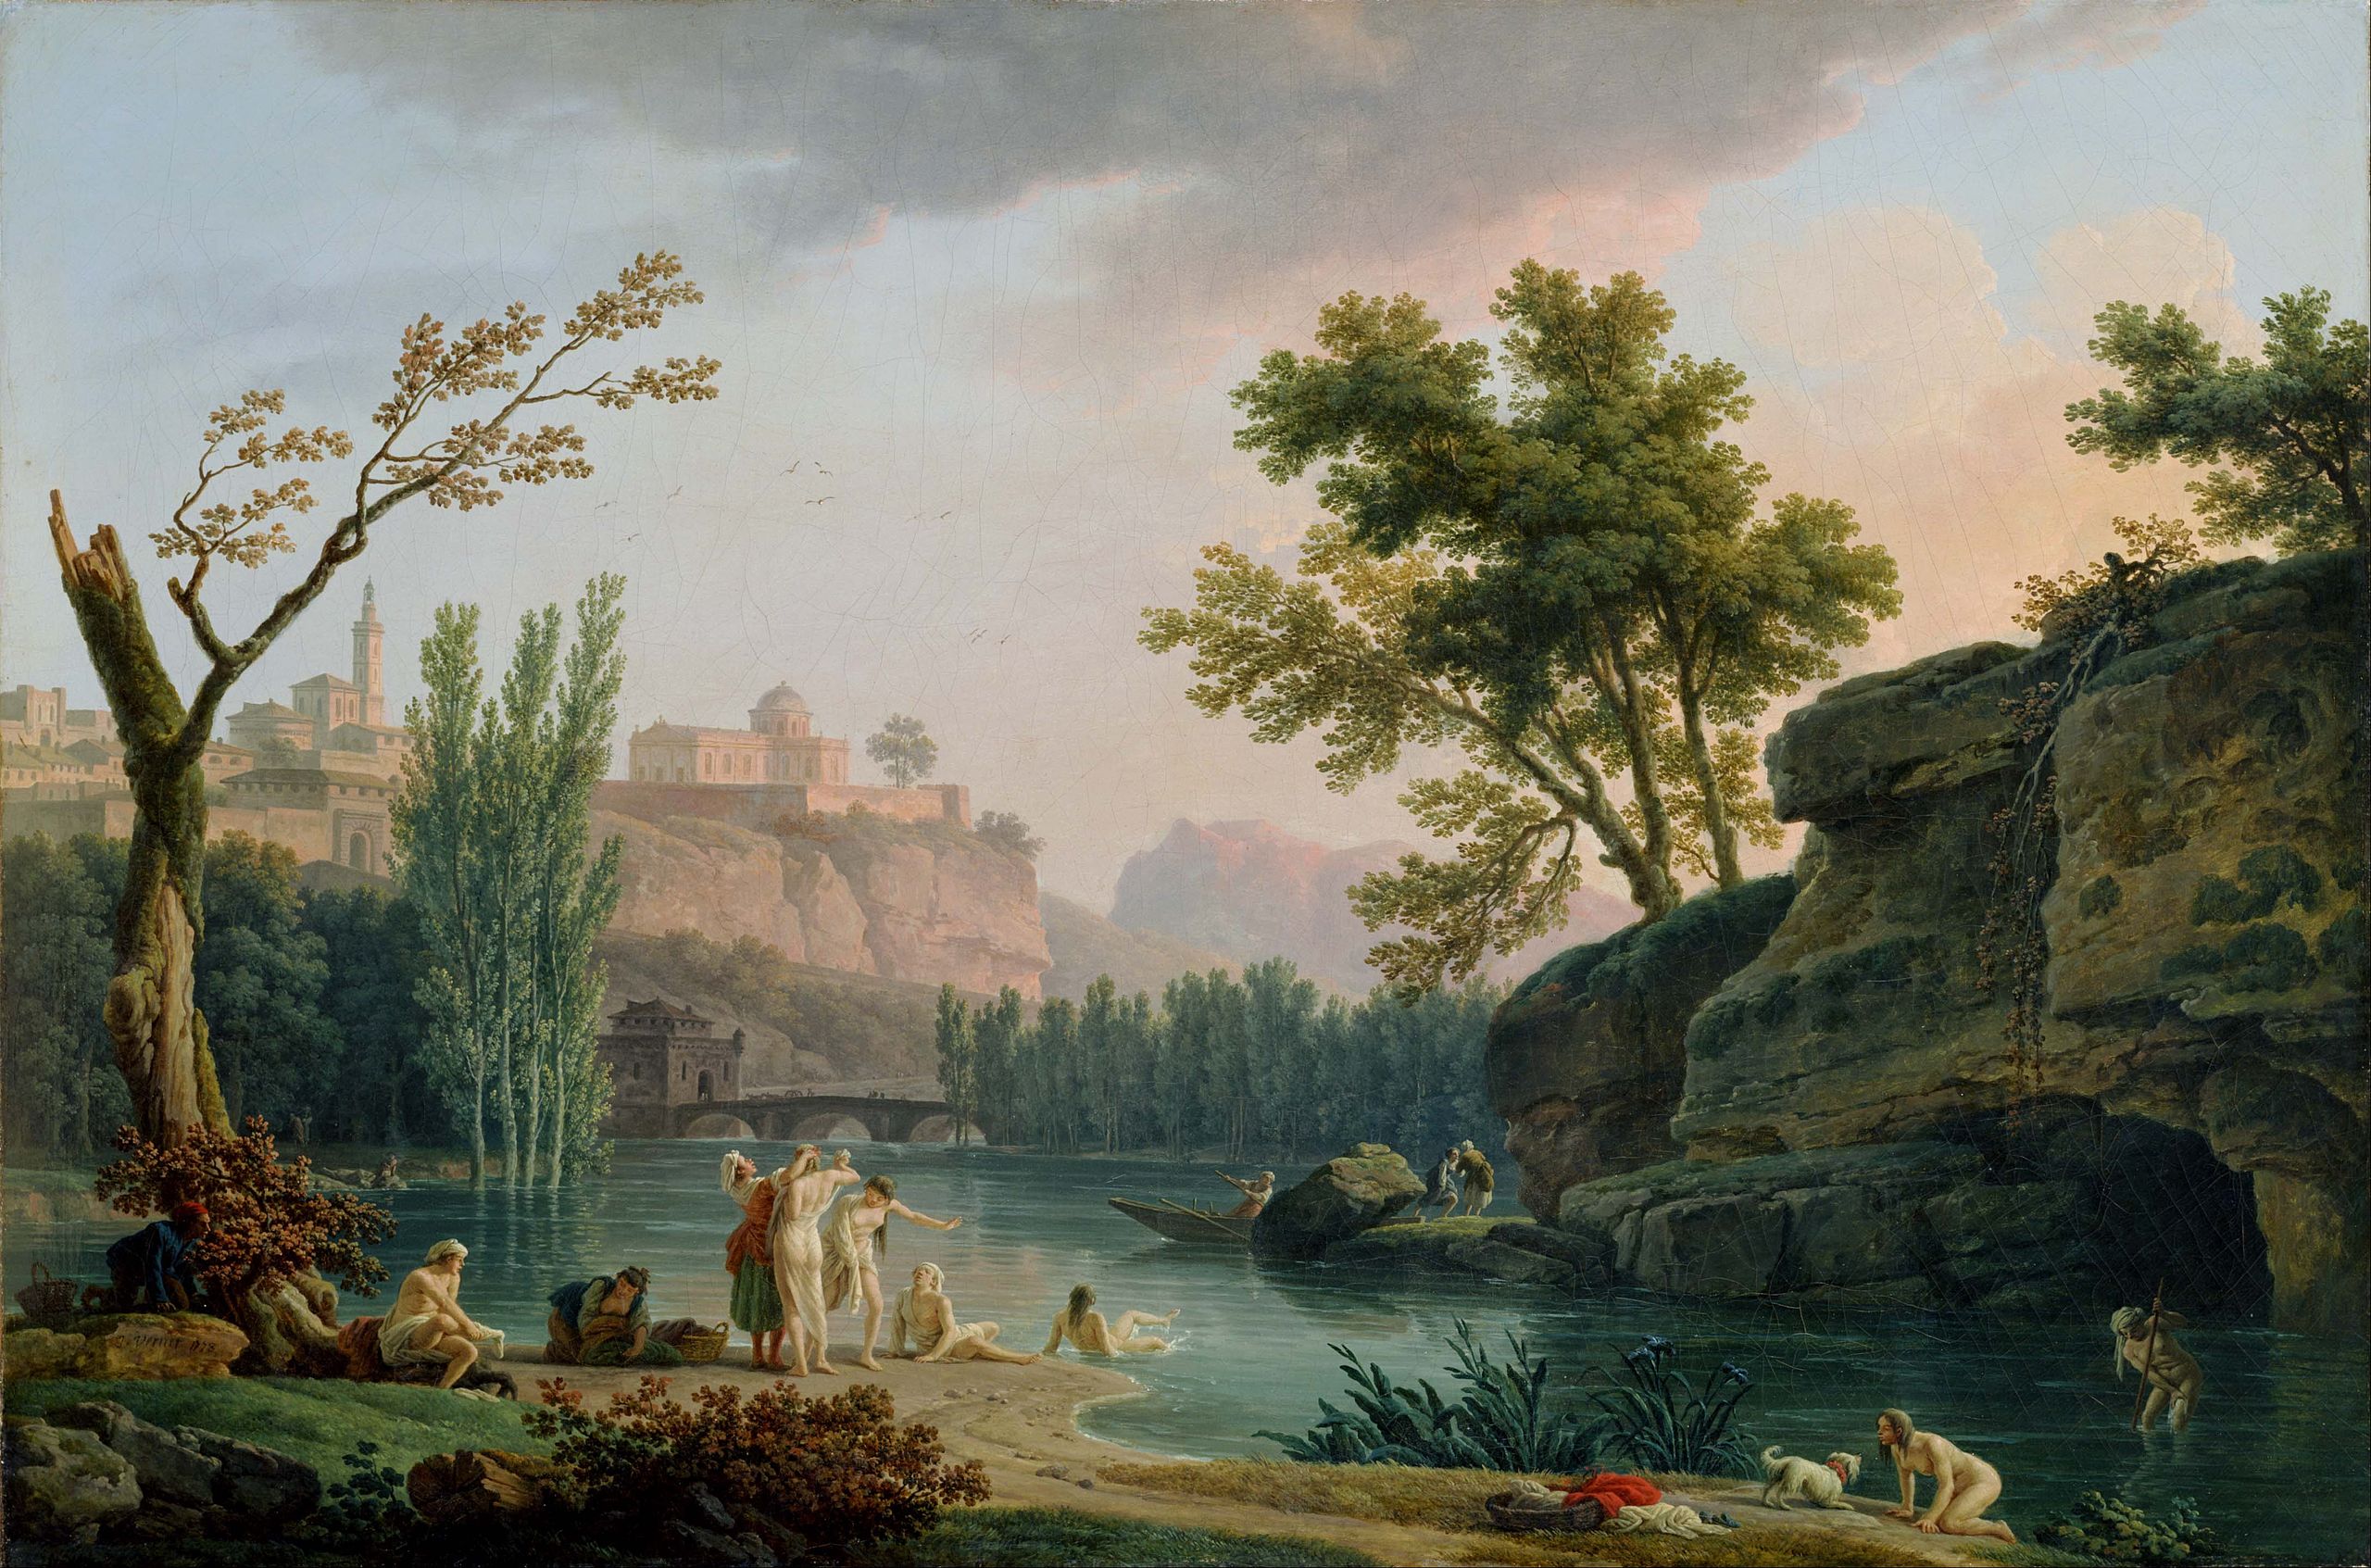 Nyáreste, táj Itáliában by Claude-Joseph Vernet - 1773 - 133 x 89 cm 